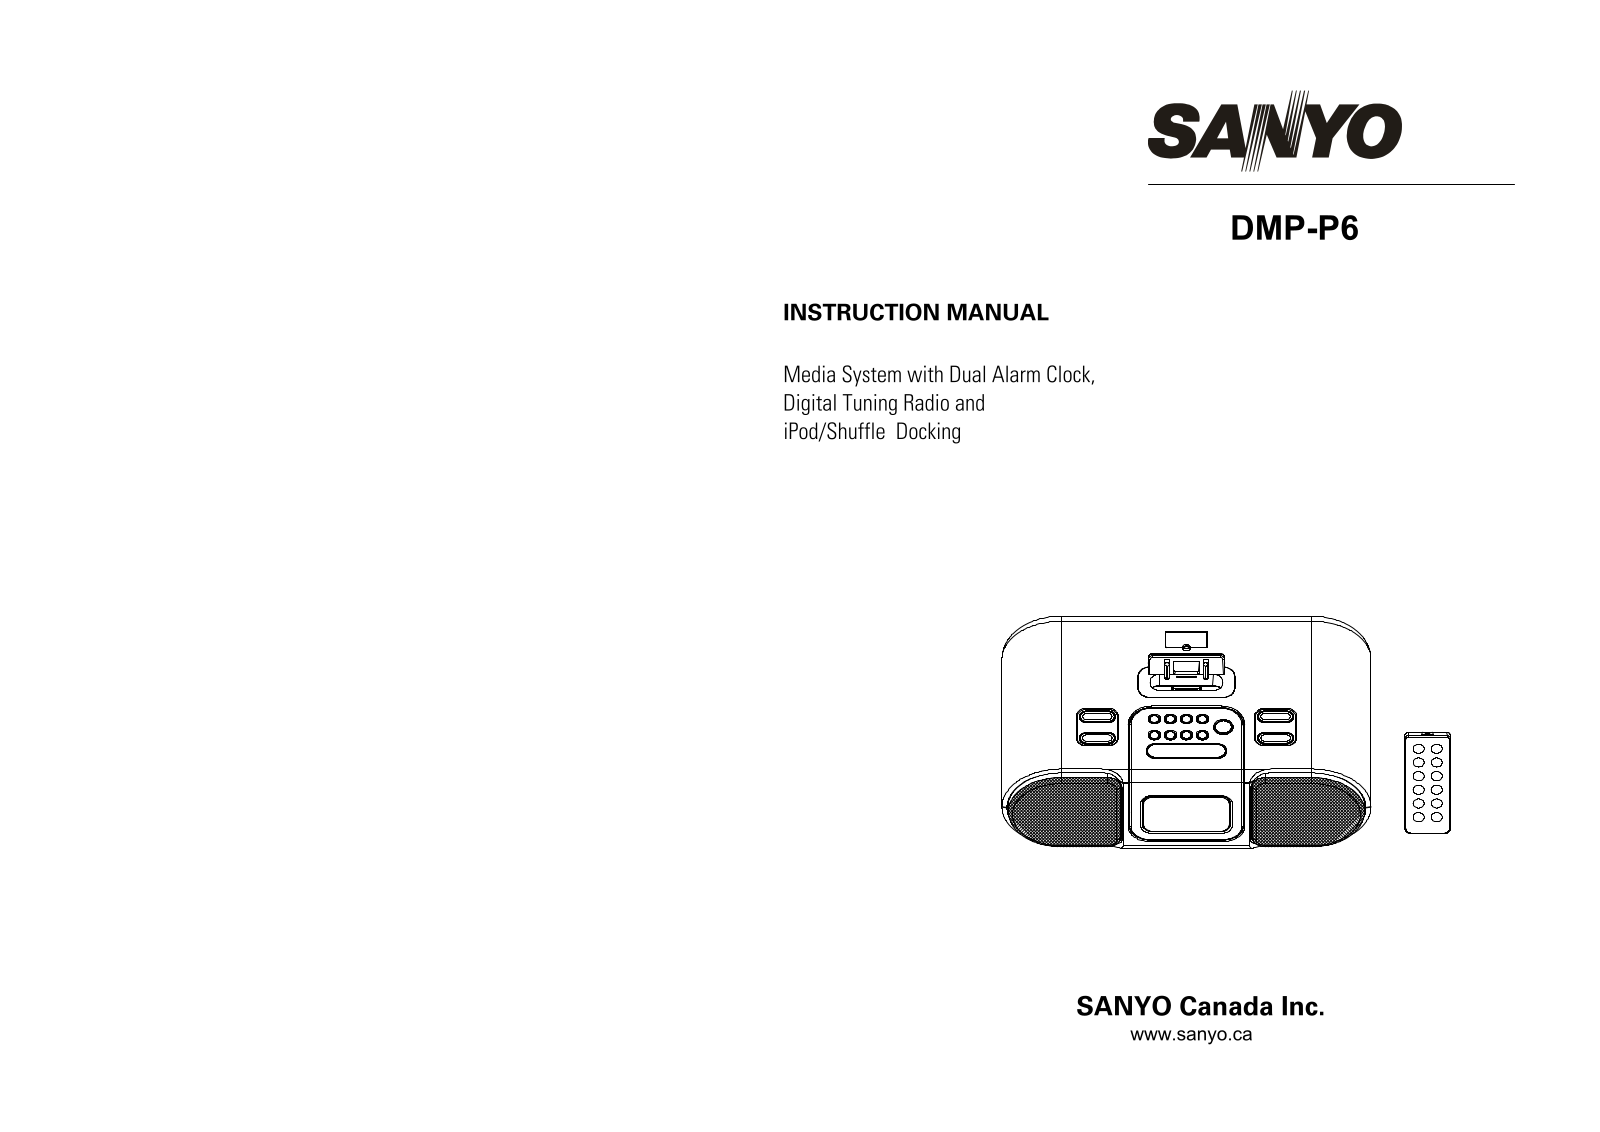 Sanyo DMP-P6 User Manual